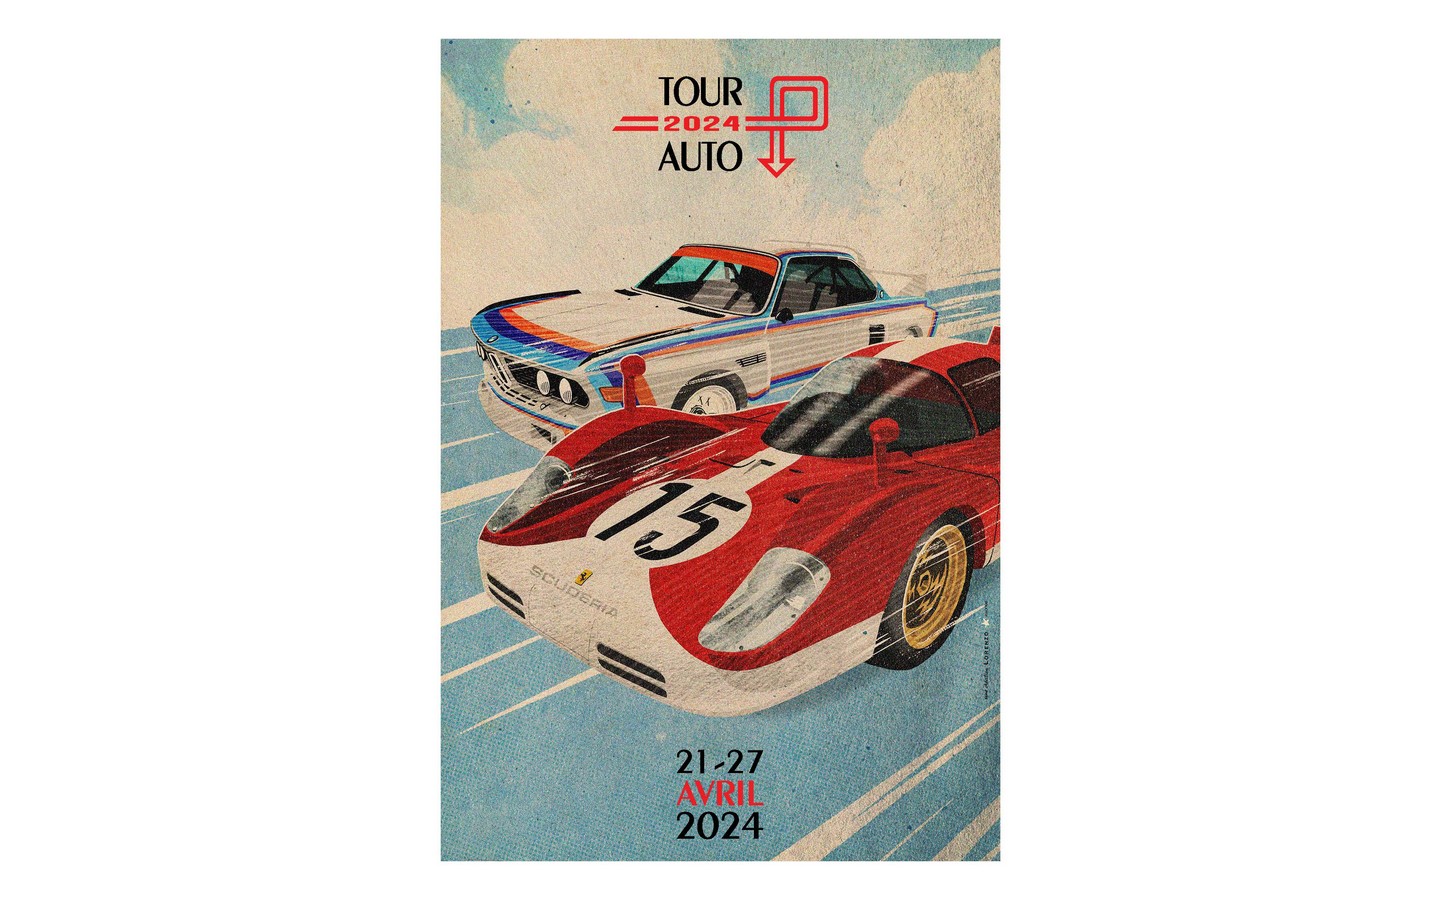 Tour Auto 2024: Pau Biarritz